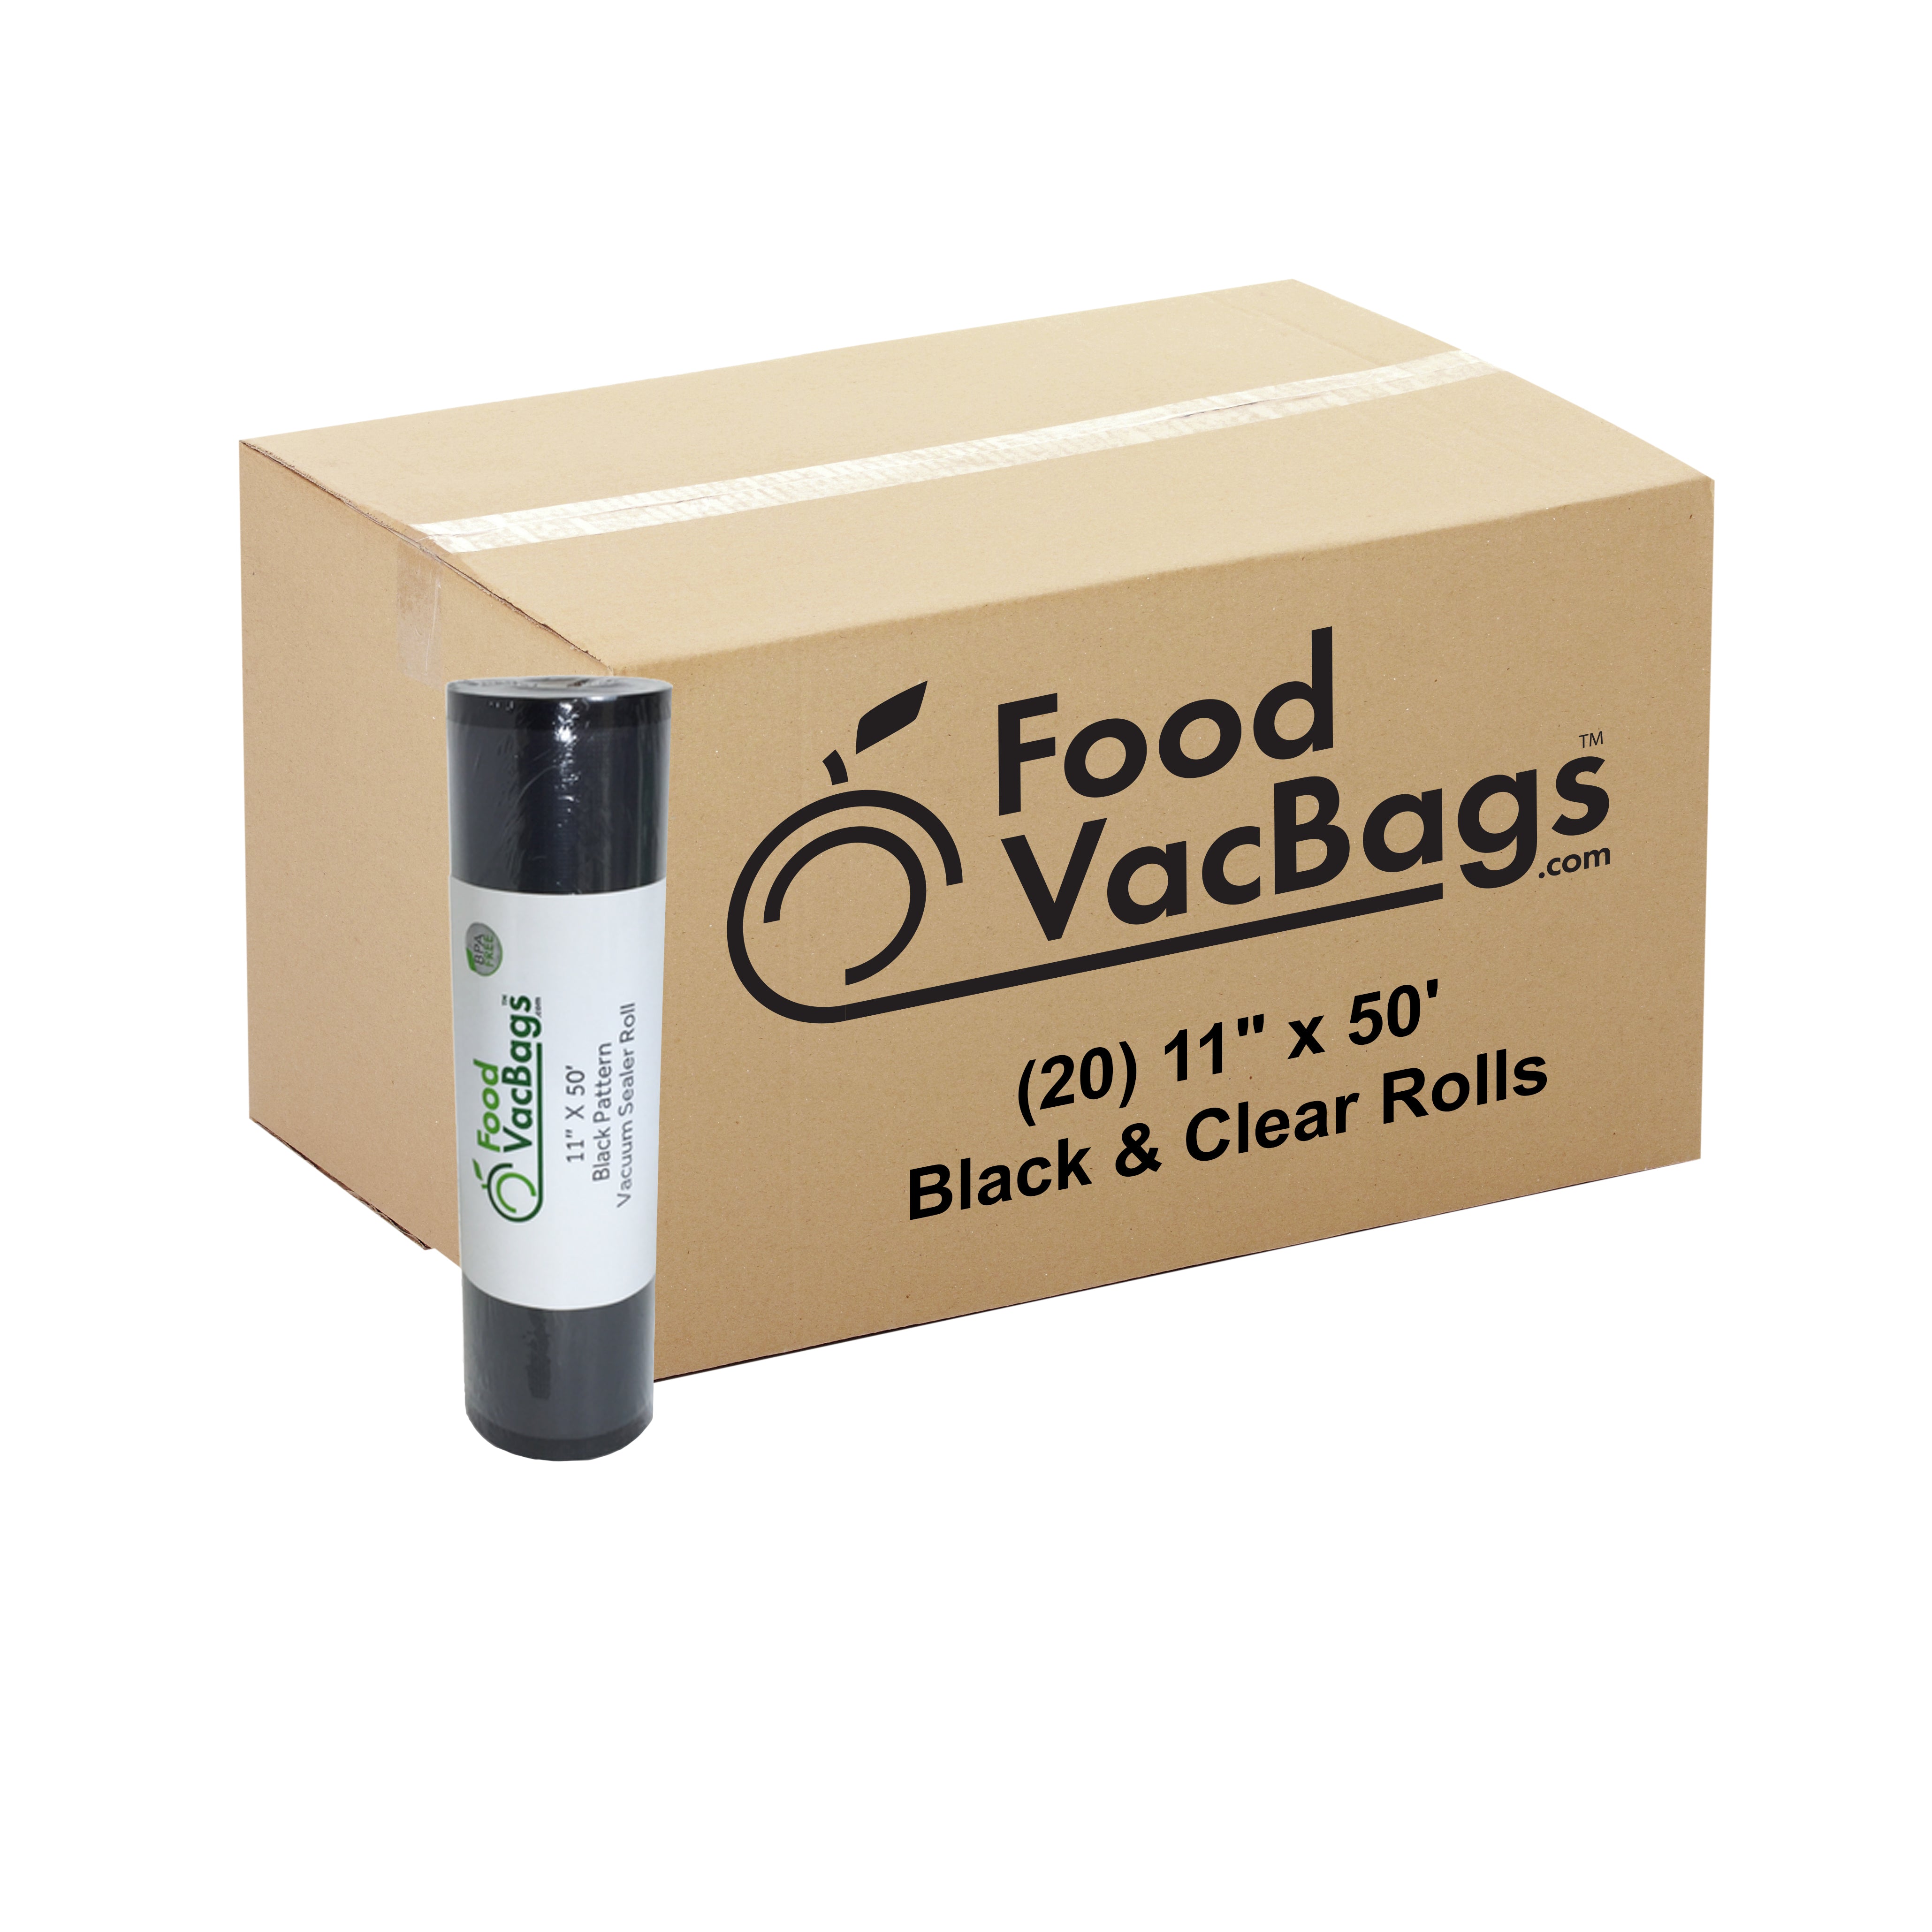 20 - 11 X 50' Black & Clear Rolls – FoodVacBags